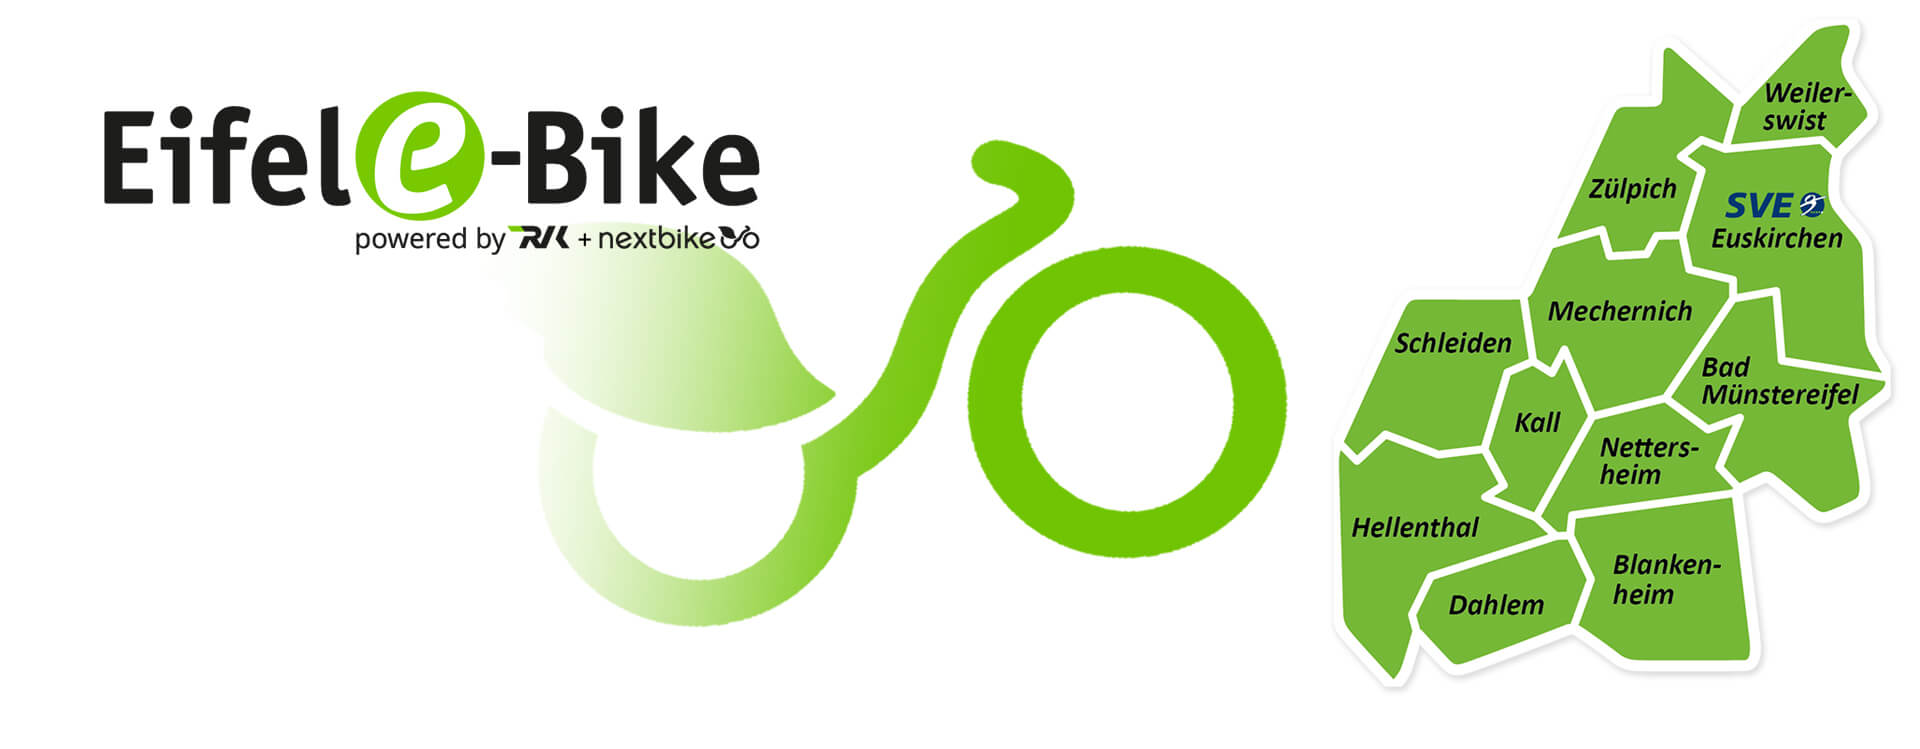 Grafik zum Start des Eifel e-Bike am 7.7.2021 mit Logo und Kreiskarte